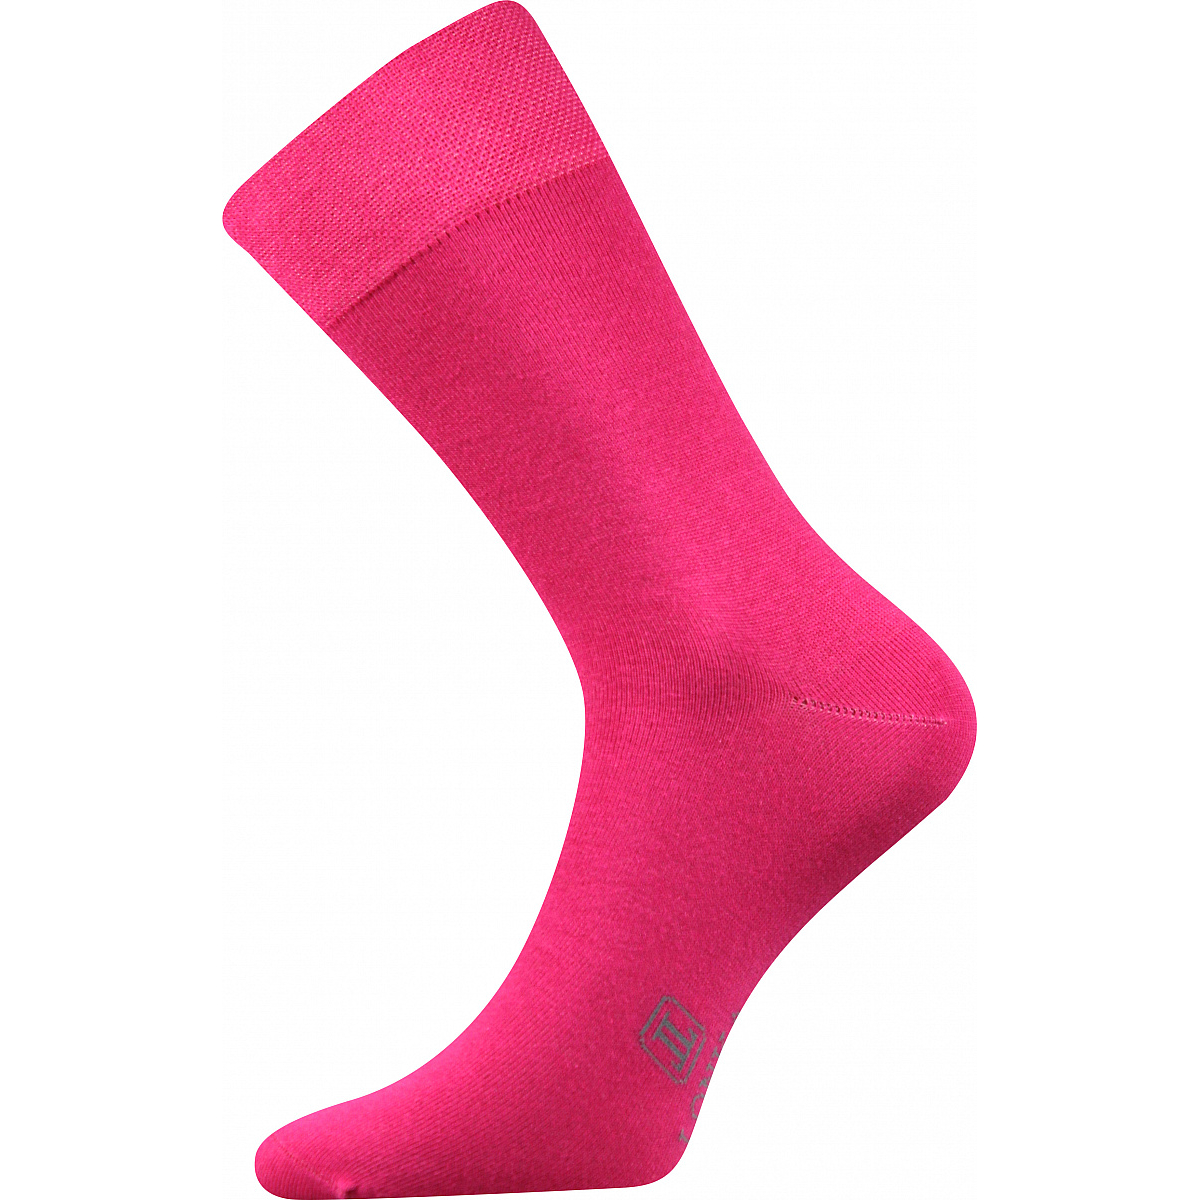 Ponožky pánské Lonka Decolor - tmavě růžové, 43-46